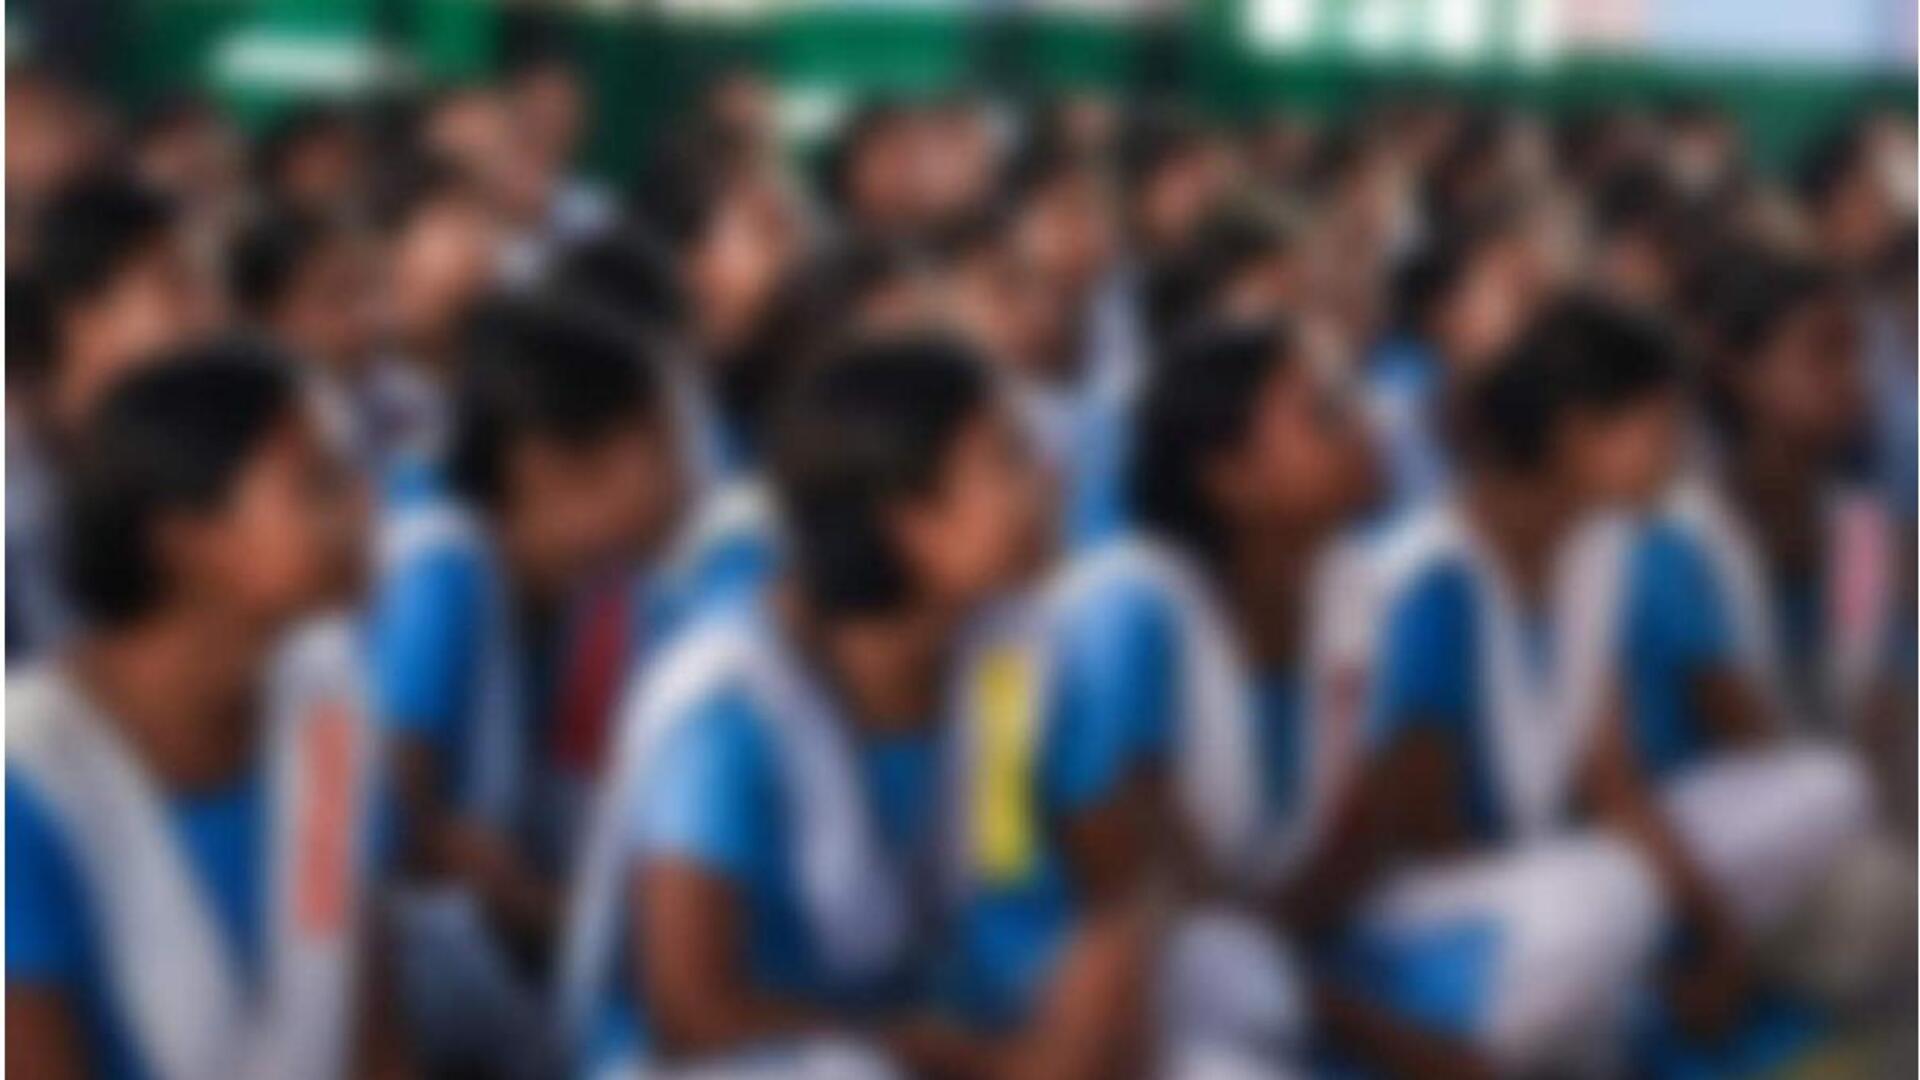 Haryana: 142 మంది విద్యార్థినులను 'లైంగిక వేధింపులకు గురిచేసిన' స్కూల్ ప్రిన్సిపాల్ అరెస్ట్